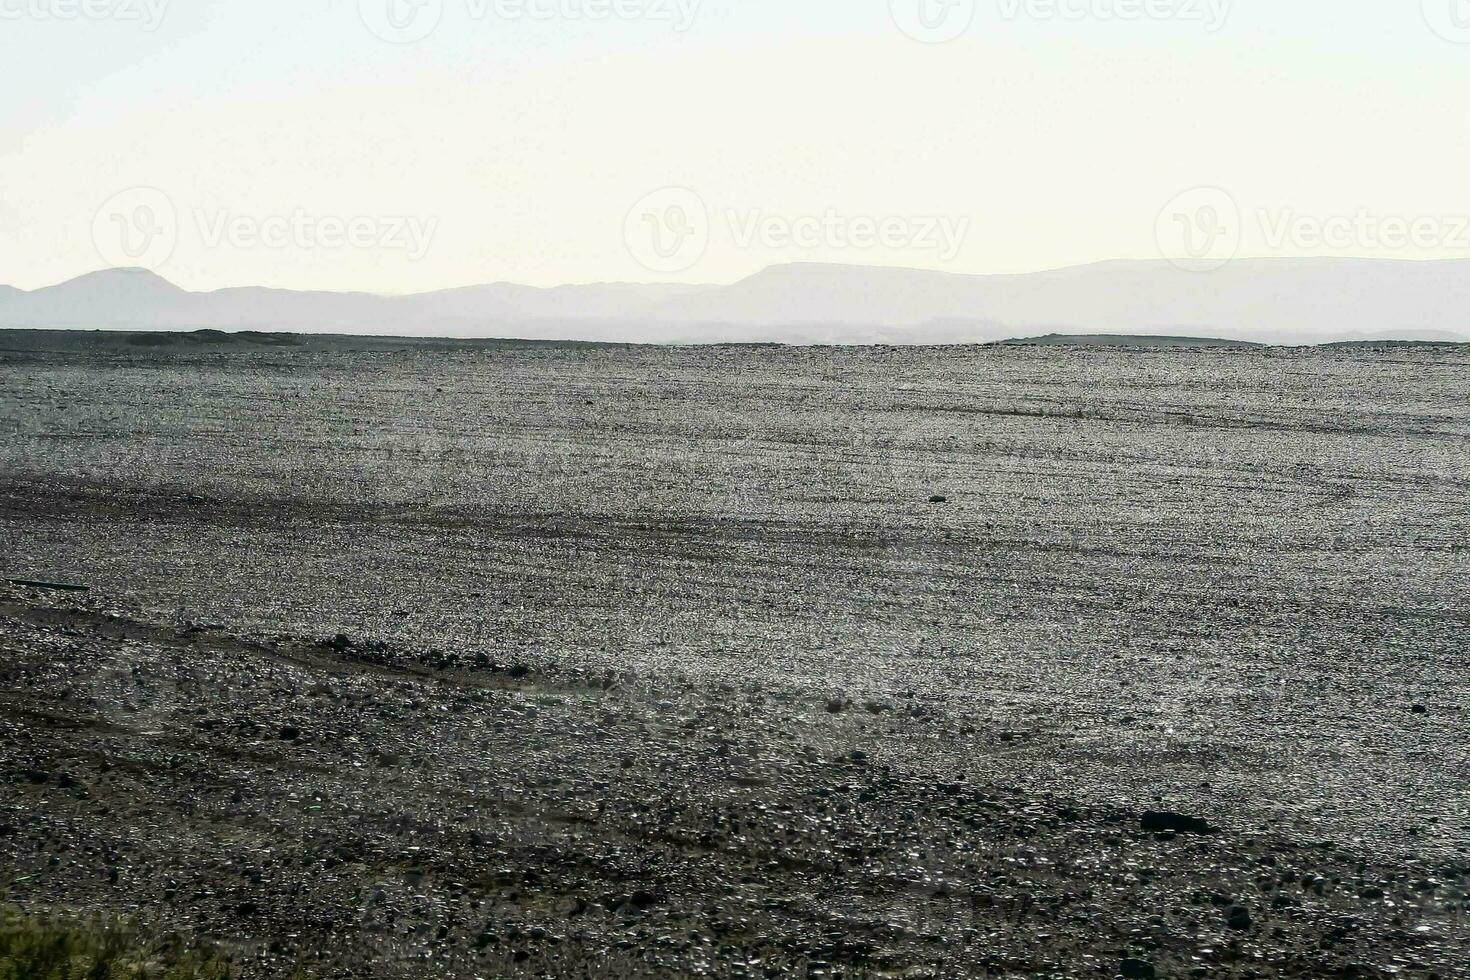 vue panoramique sur le désert photo